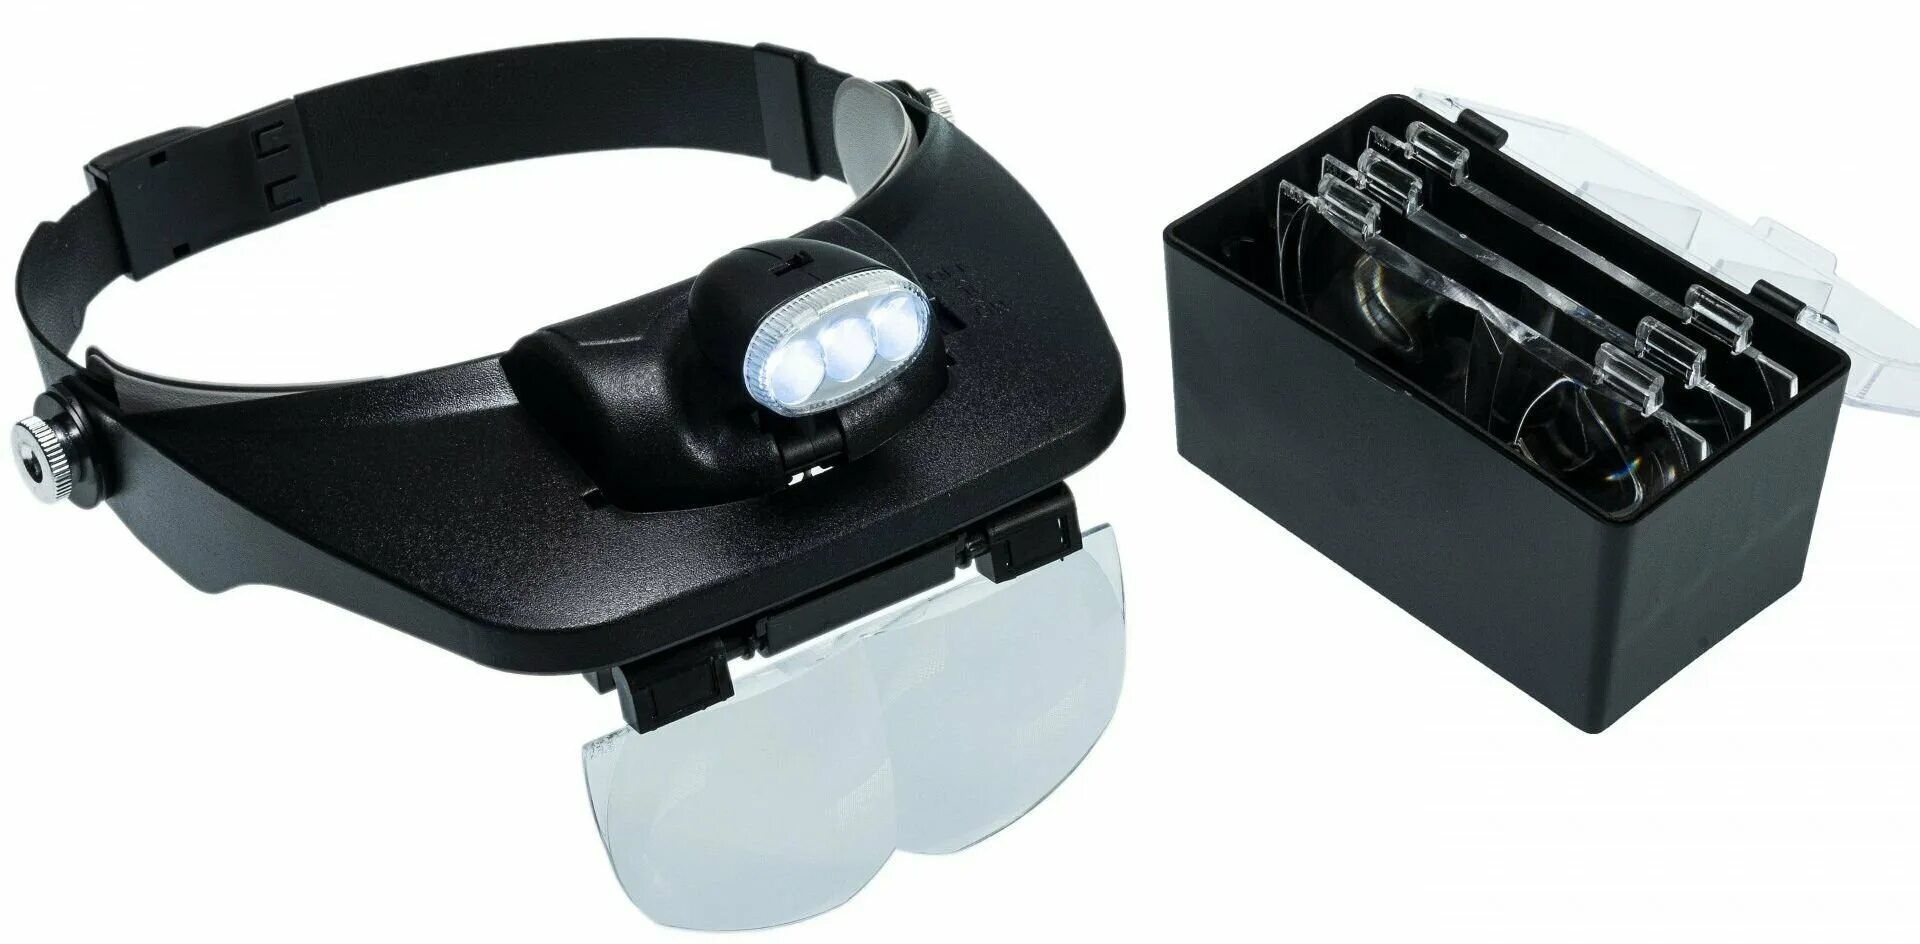 Купить лупу очки для мелких работ. Монтажные бинокулярные очки mg81001-. Лупа налобная Kromatech mg81001-a, 1,2/1,8/2,5/3,5х, с подсветкой (2 led). Лупа налобная 20x бинокулярная (очки) с подсветкой (2 led) mg9892a-II. Лупа MG 81001-H С led подсветкой.